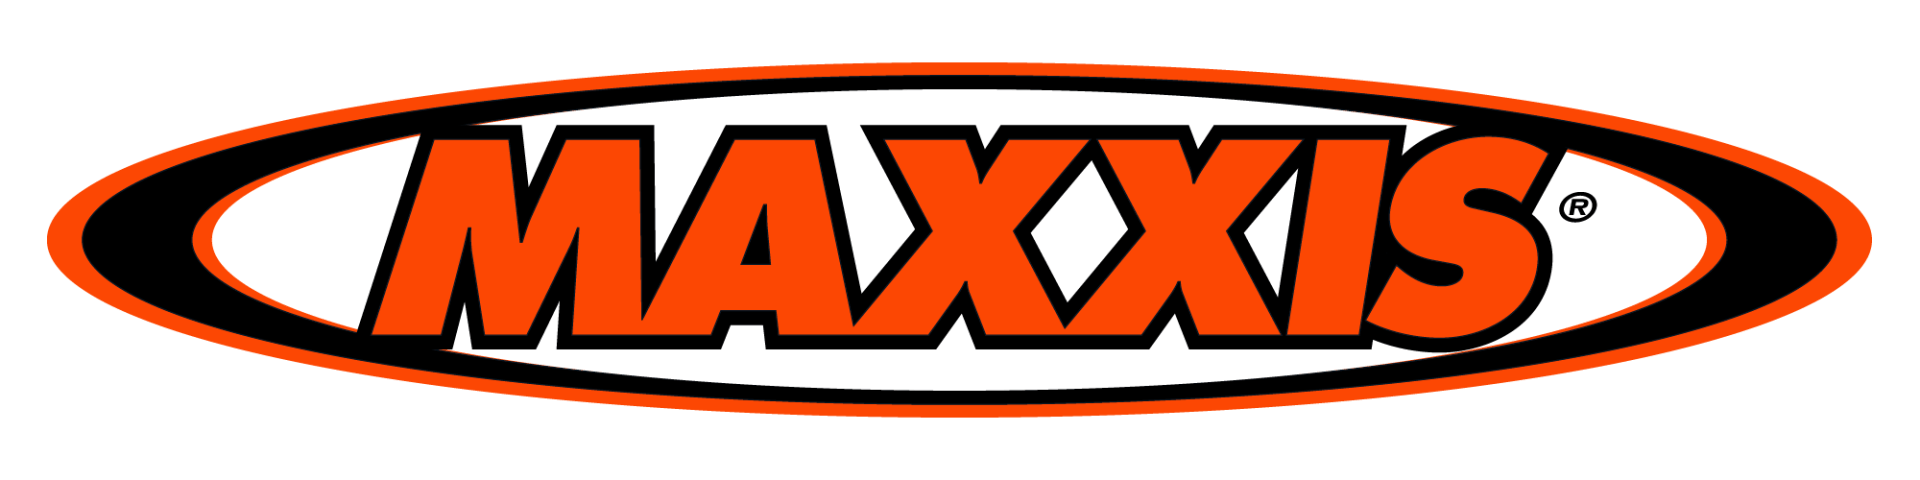 Maxxis logo